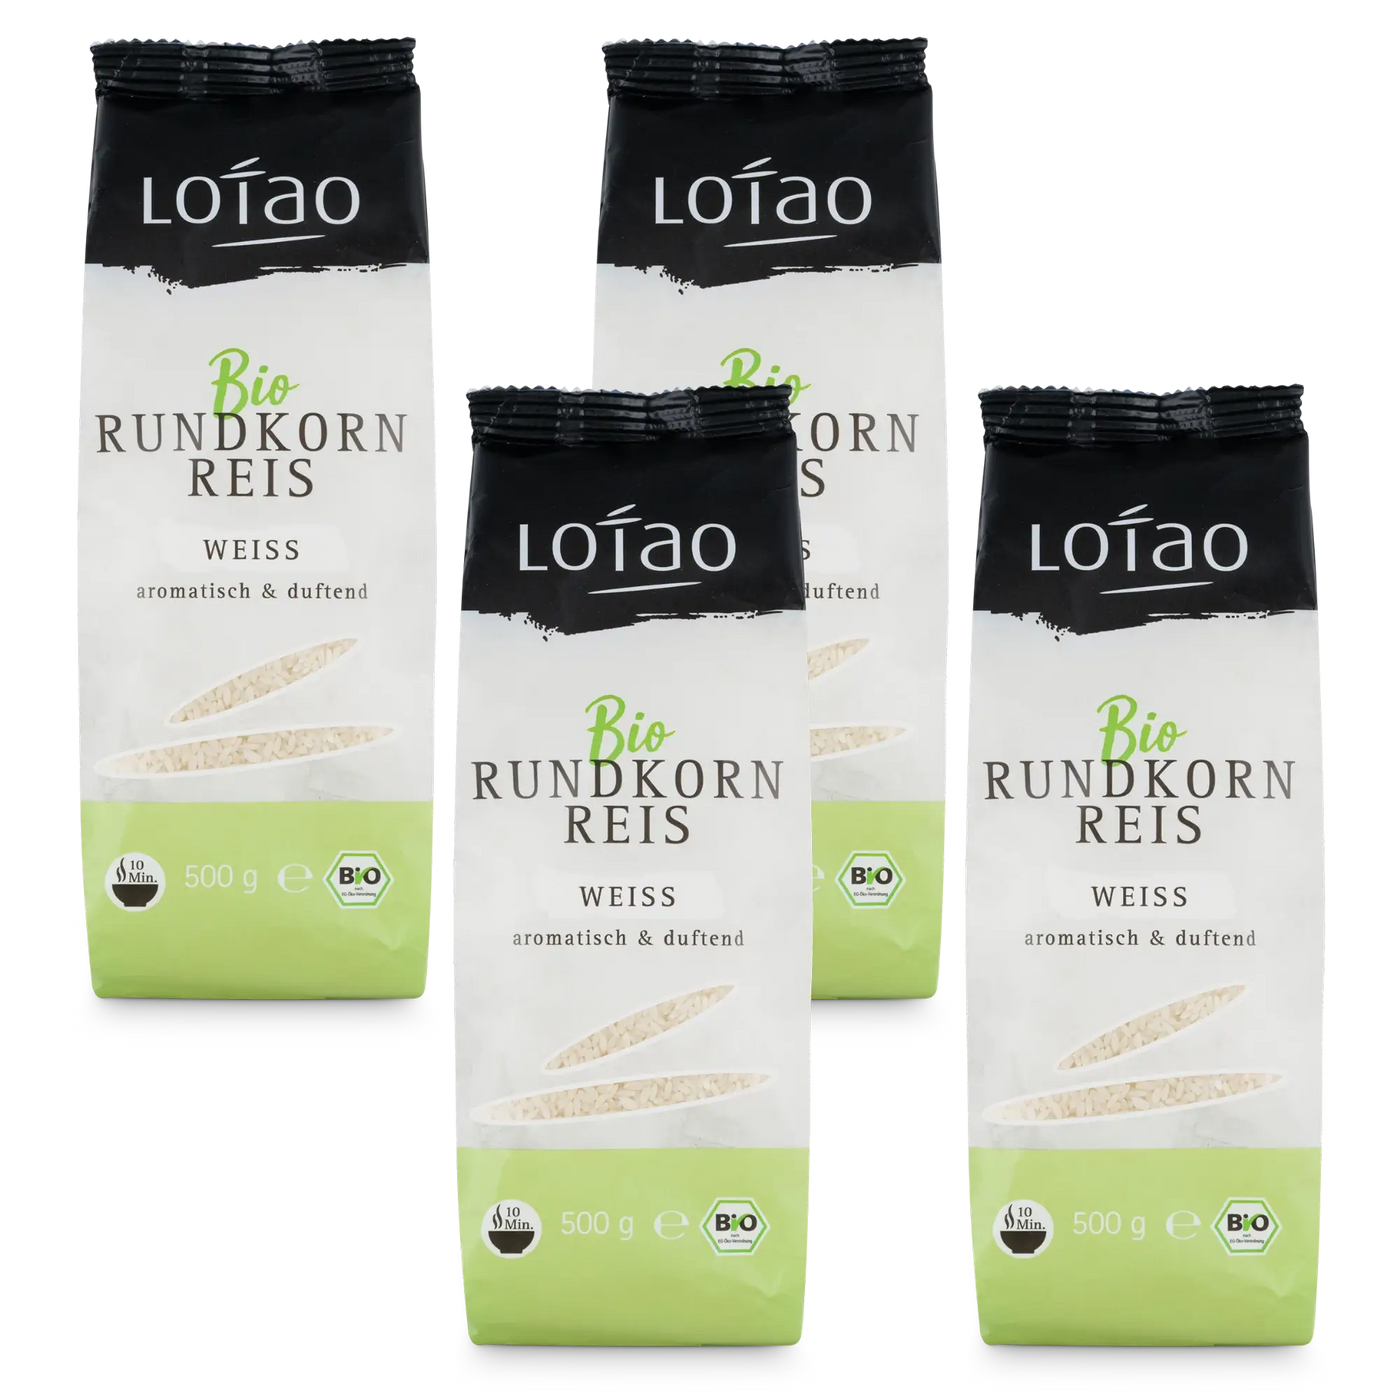 Lotao Weisser Rundkornreis in 100% Bio-Qualität mit aromatisch duftendem Geschmack im 4er Set